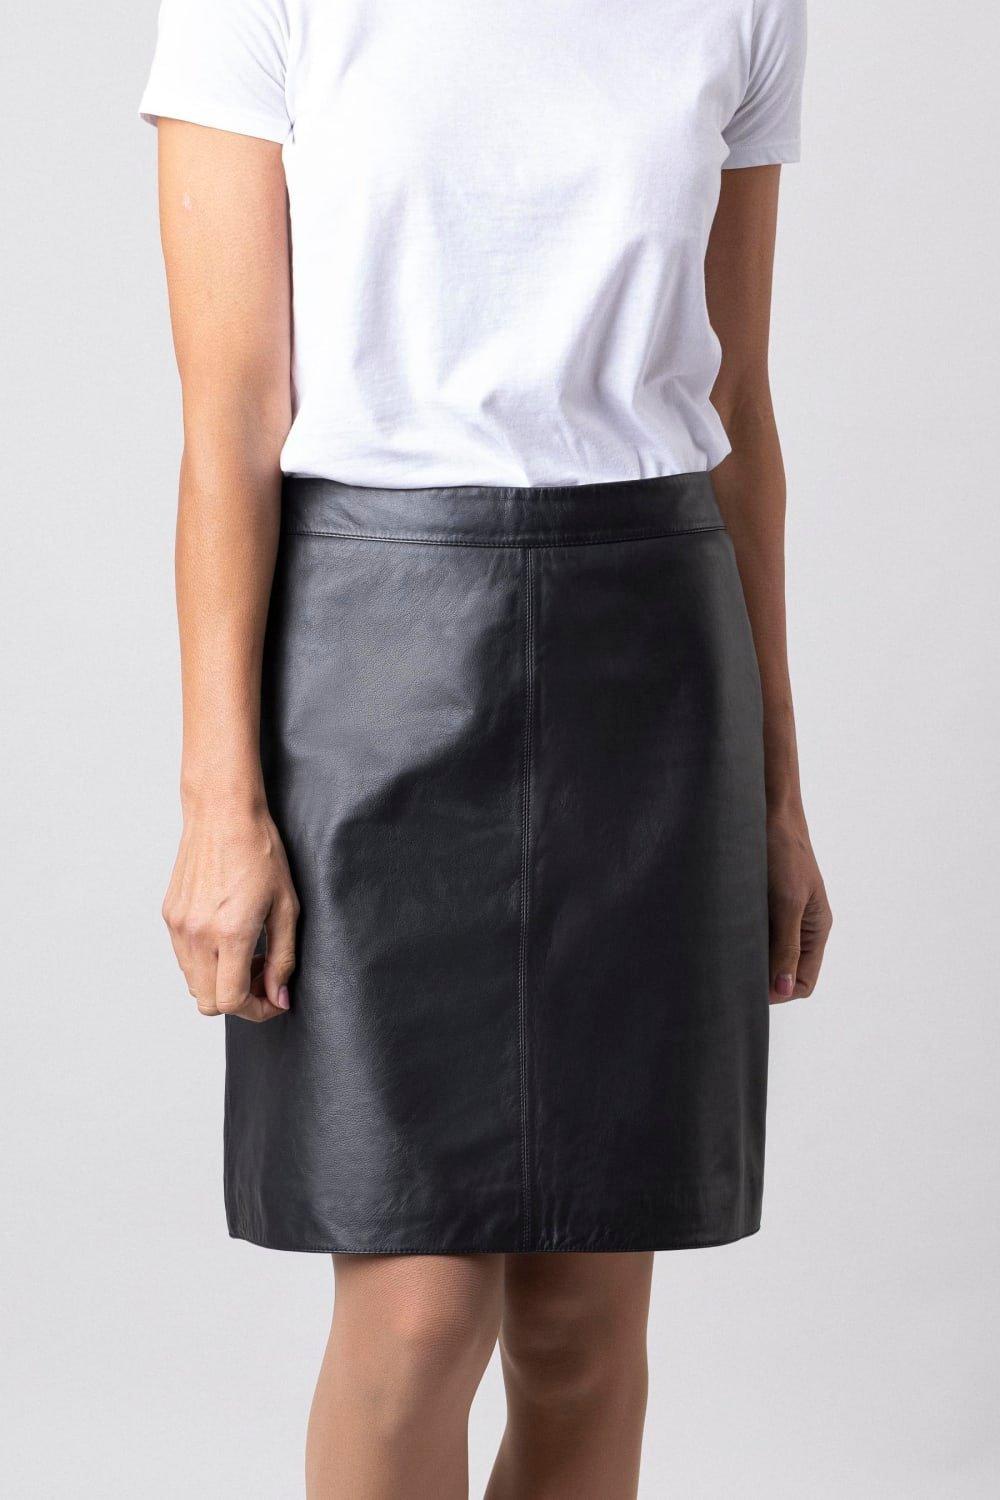 Кожаная юбка-трапеция Lakeland Leather, черный юбка с защипами и молнией сзади